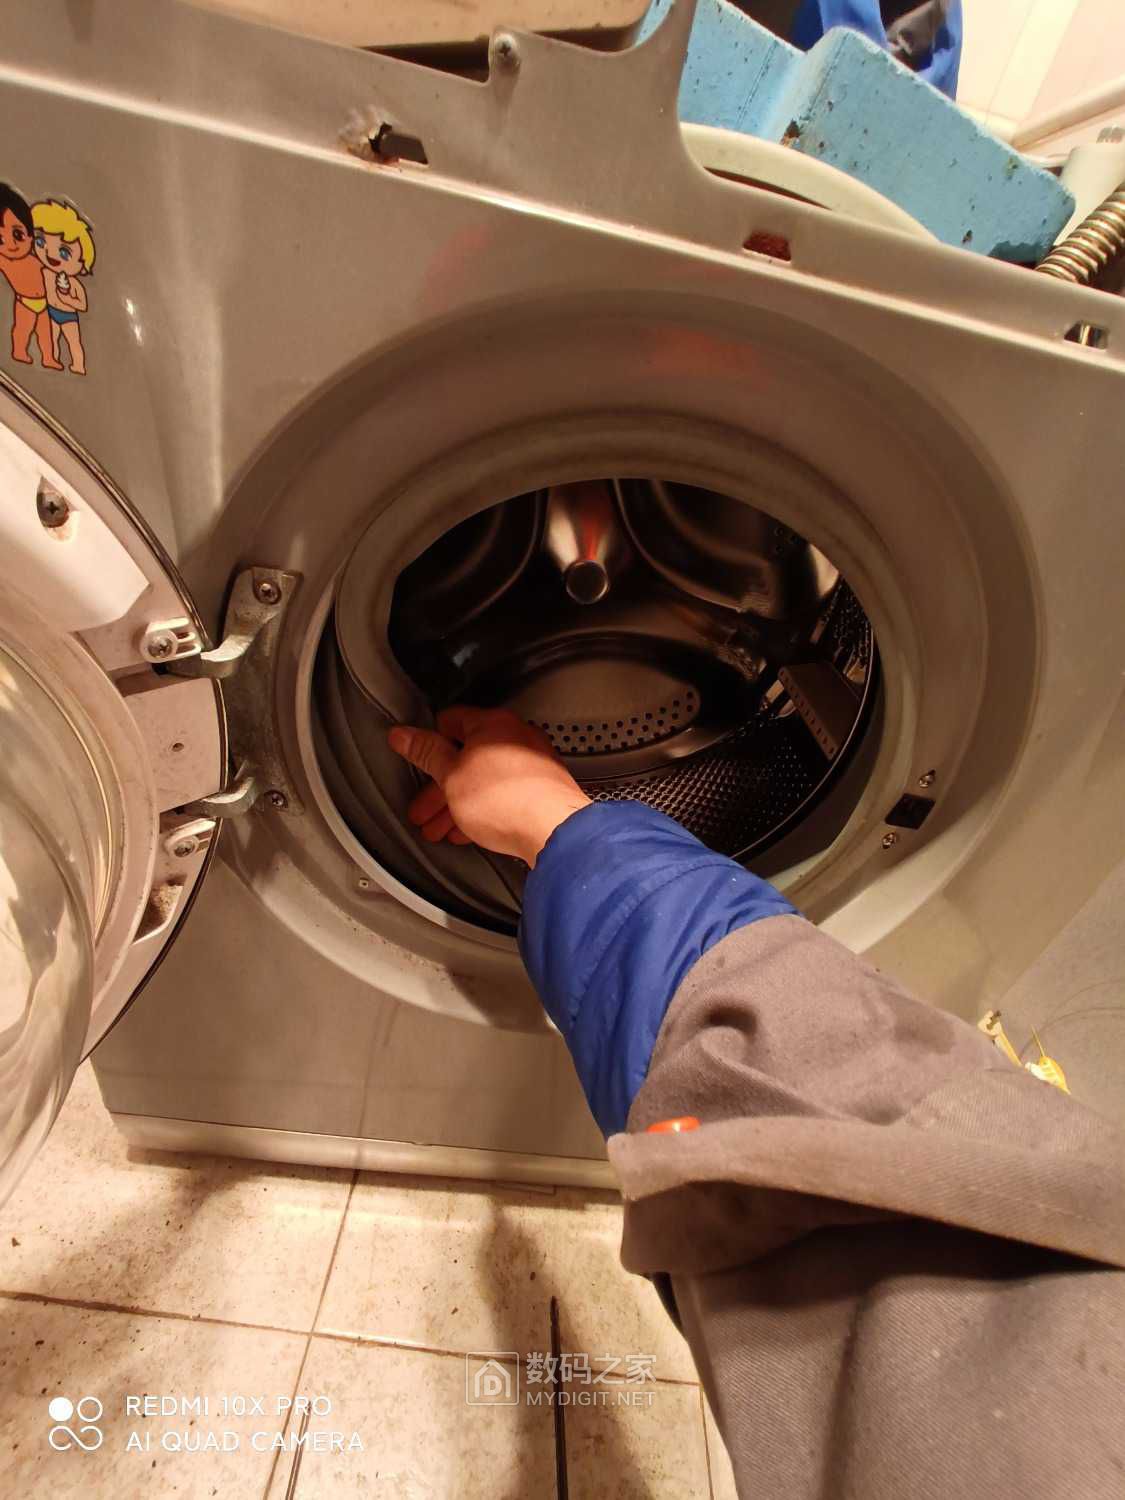 洗衣机怎么拆开内桶清洗?_百度知道